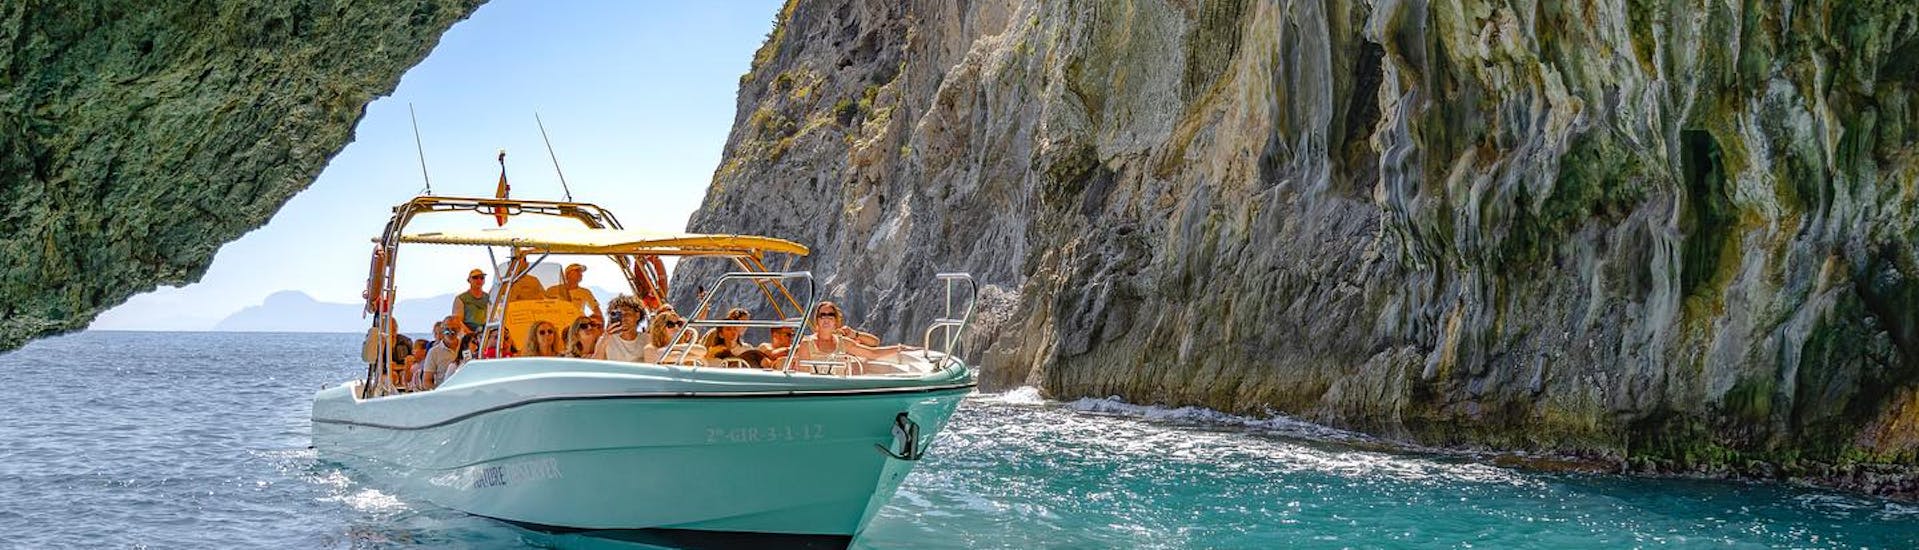 Paseo en barco a la playa de Formentor y Cueva Azul desde Alcúdia con esnórquel con My Sea Experience Alcúdia.